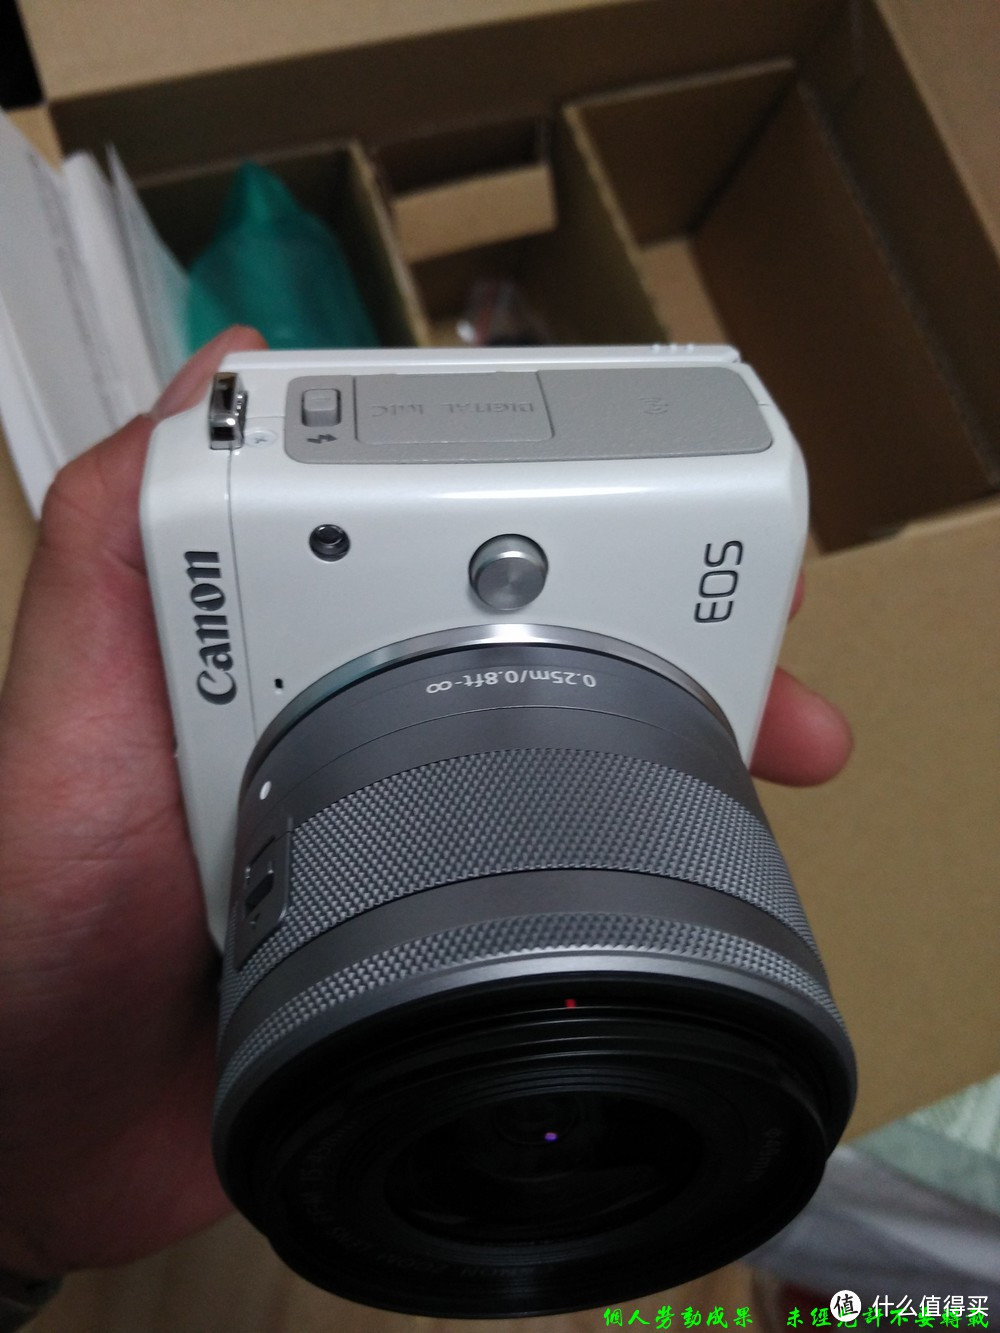 业余爱好者的 Canon 佳能 EOS M3/NIKON 尼康 S8100/EOS 600D 相机 晒单